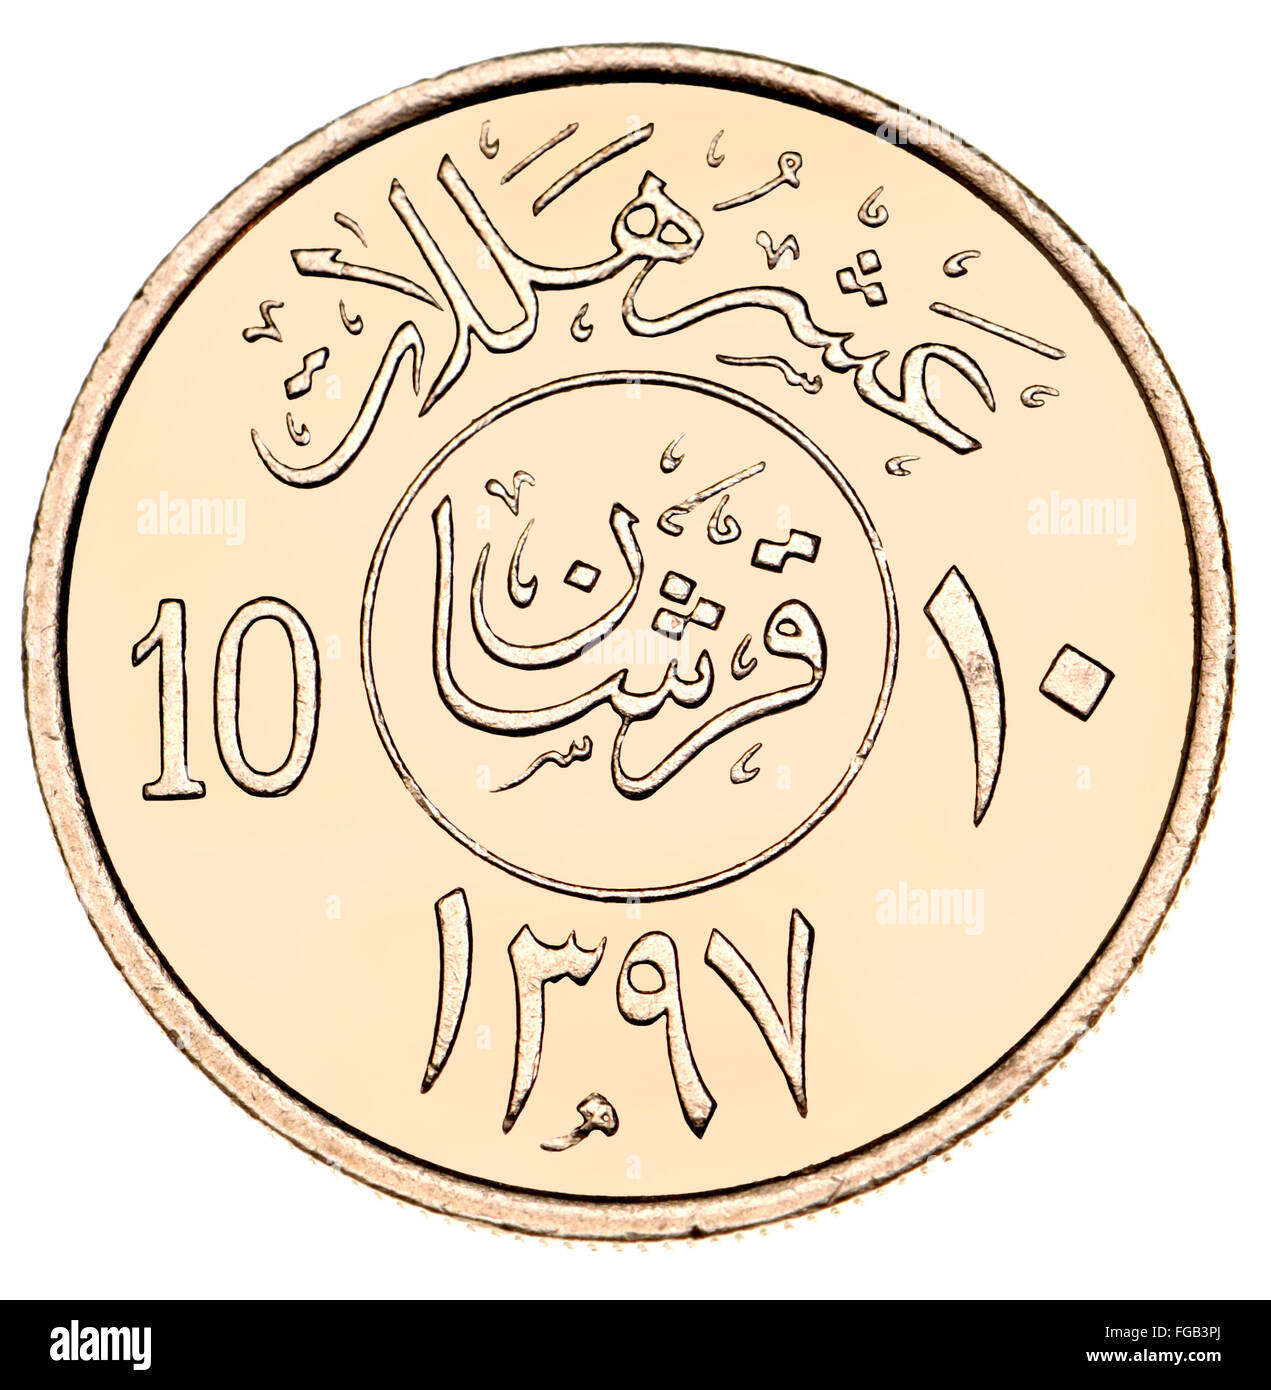 10 Halala Coin of Saudi Arabia zeigt arabische Schrift und Symbole (Cupro-Nickel) und Datum 1397 (1977) im islamischen Kalender Stockfoto